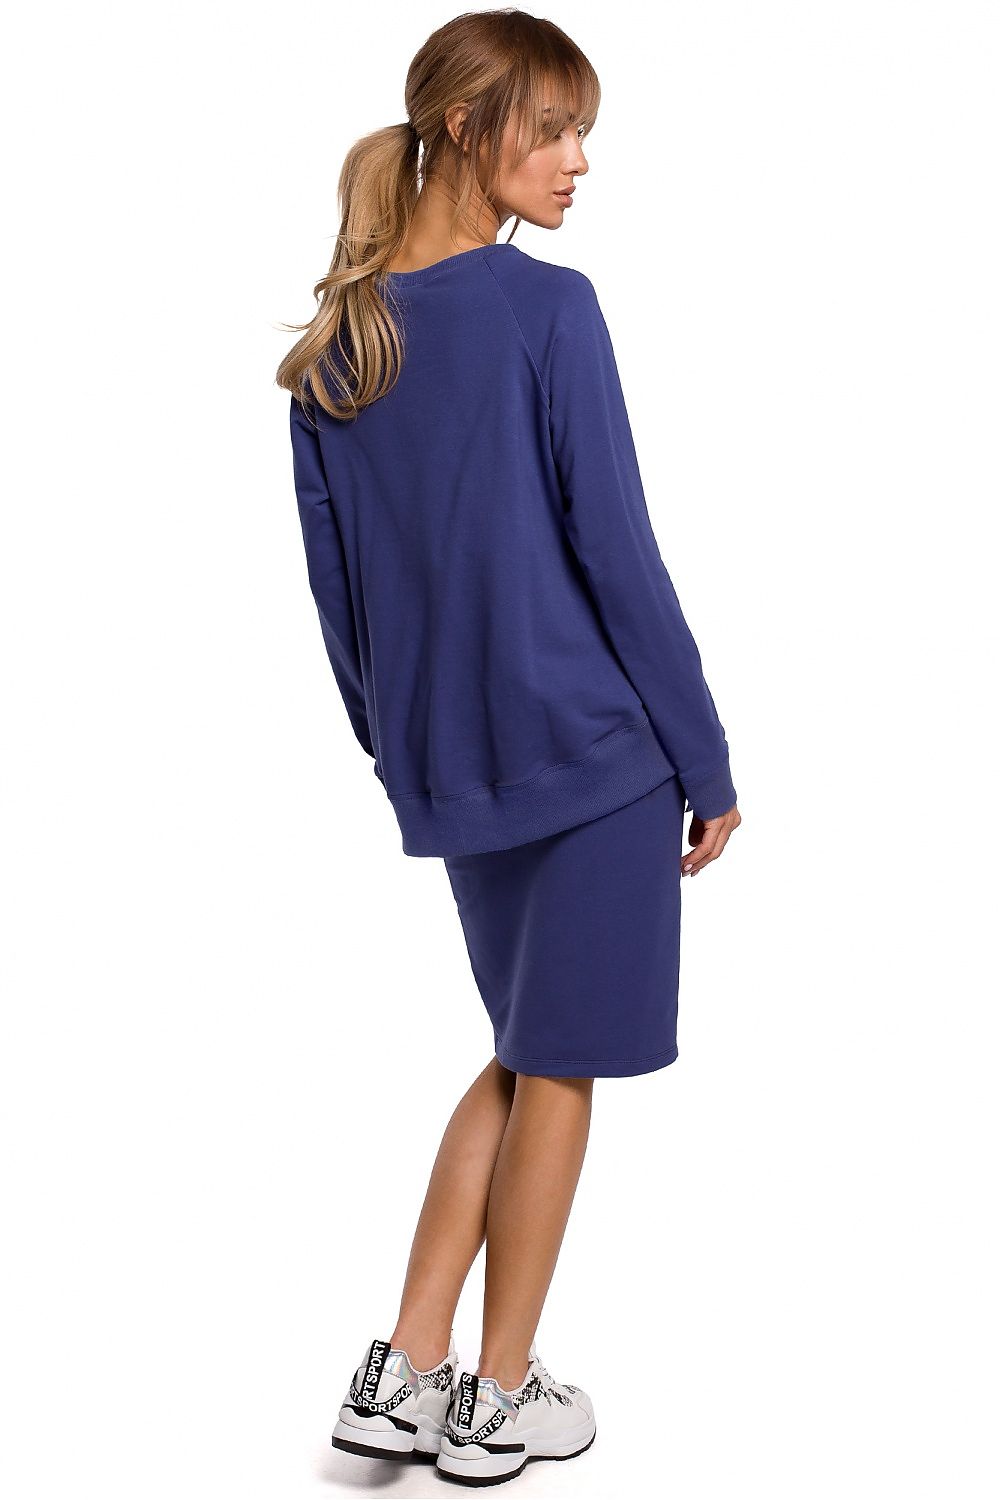 Jupe bleue fendue élégante, coupe droite midi, parfaite pour un look sophistiqué et tendance.